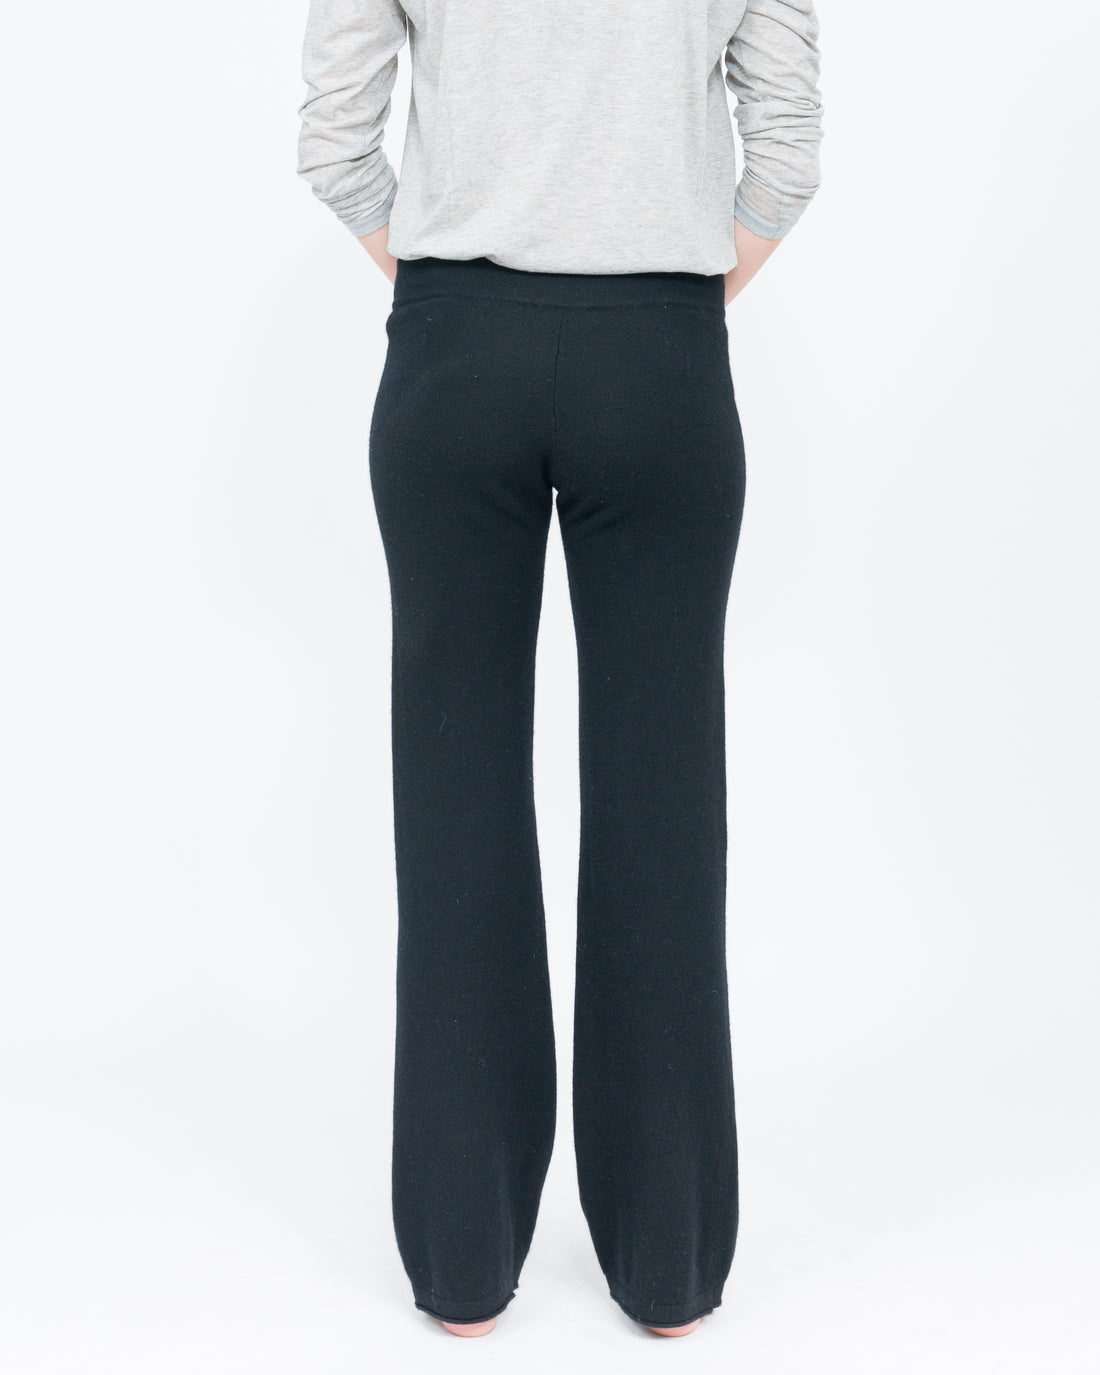 women's black cashmere pant